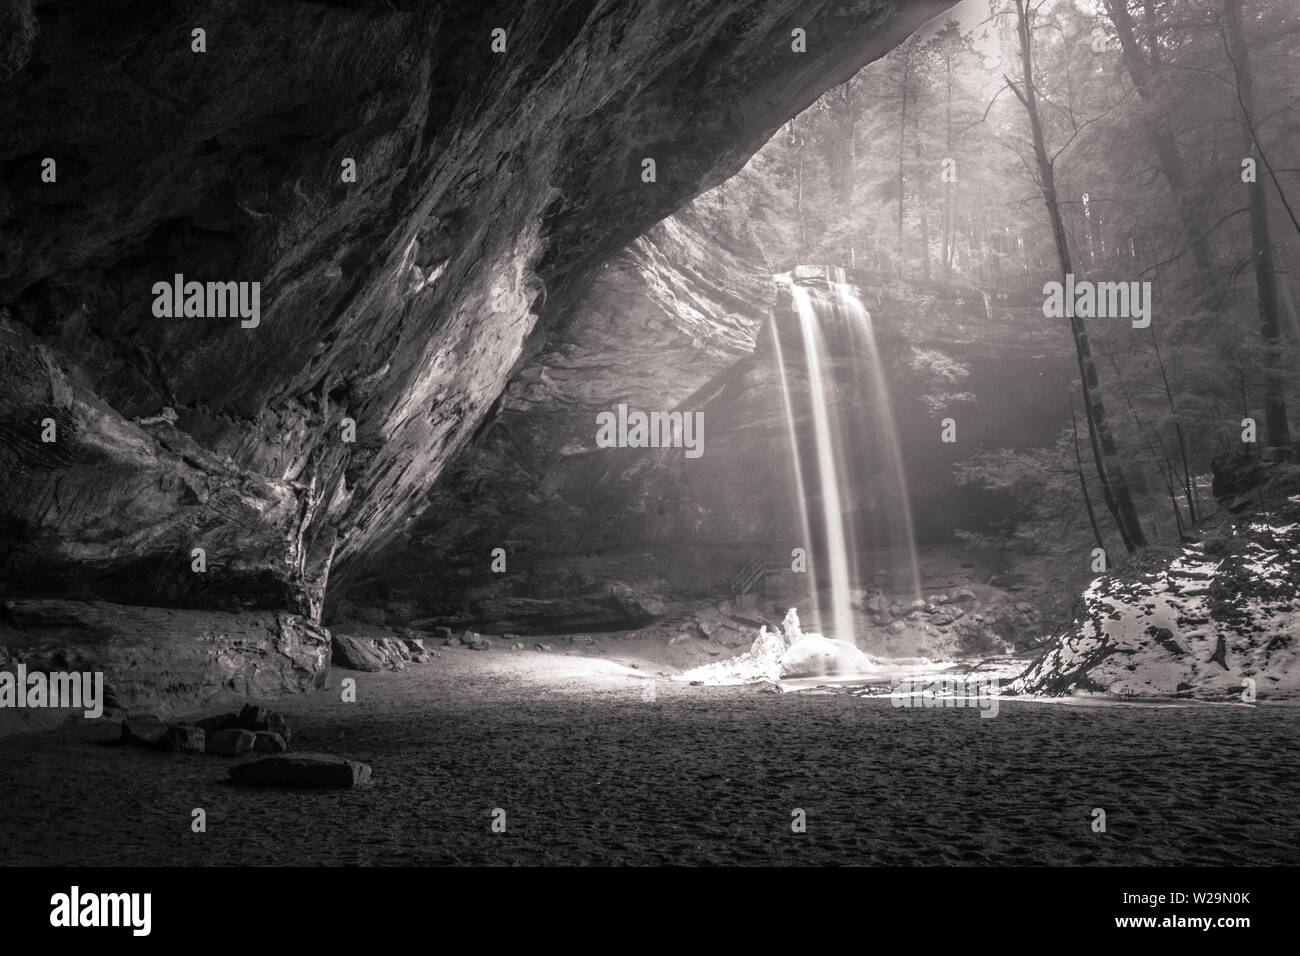 Mystischer Wasserfall Im Wald In Schwarzweiß. Der Frühling kommt zum Hocking Hills State Park, während der Schnee zu schmelzen beginnt Stockfoto